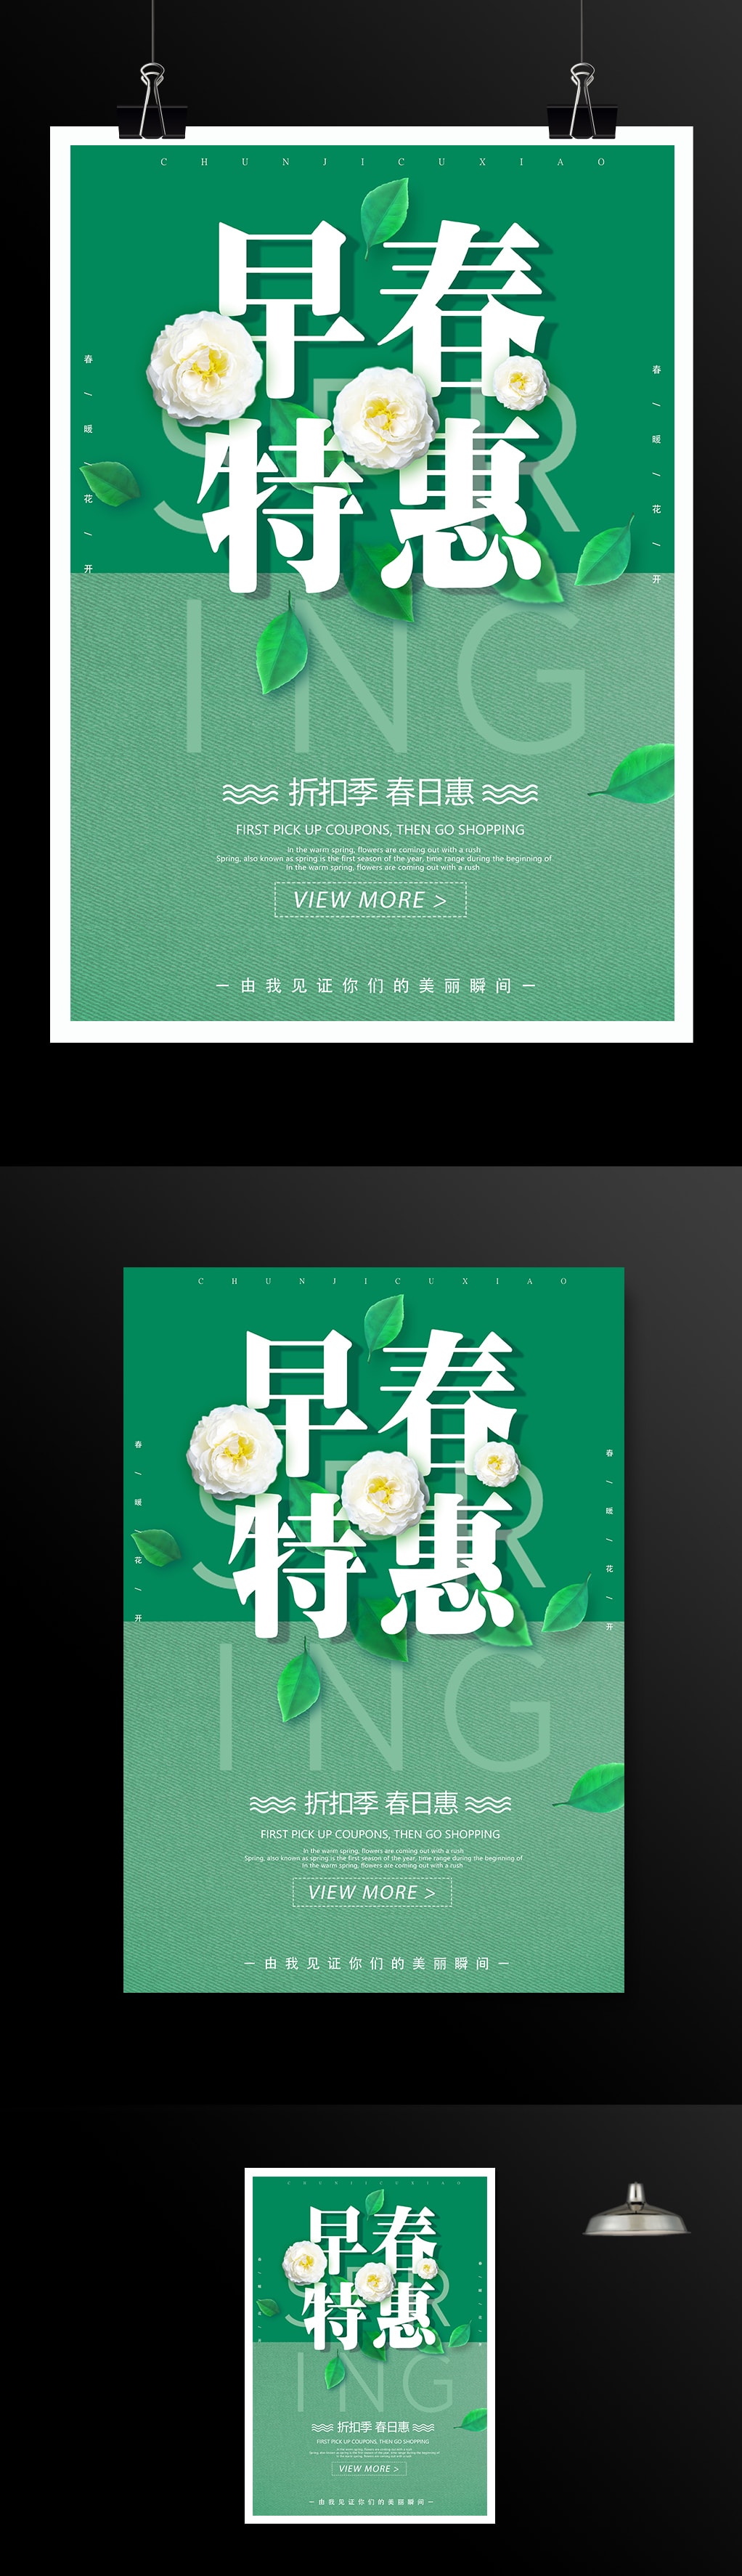 绿色小清新早春特惠促销海报